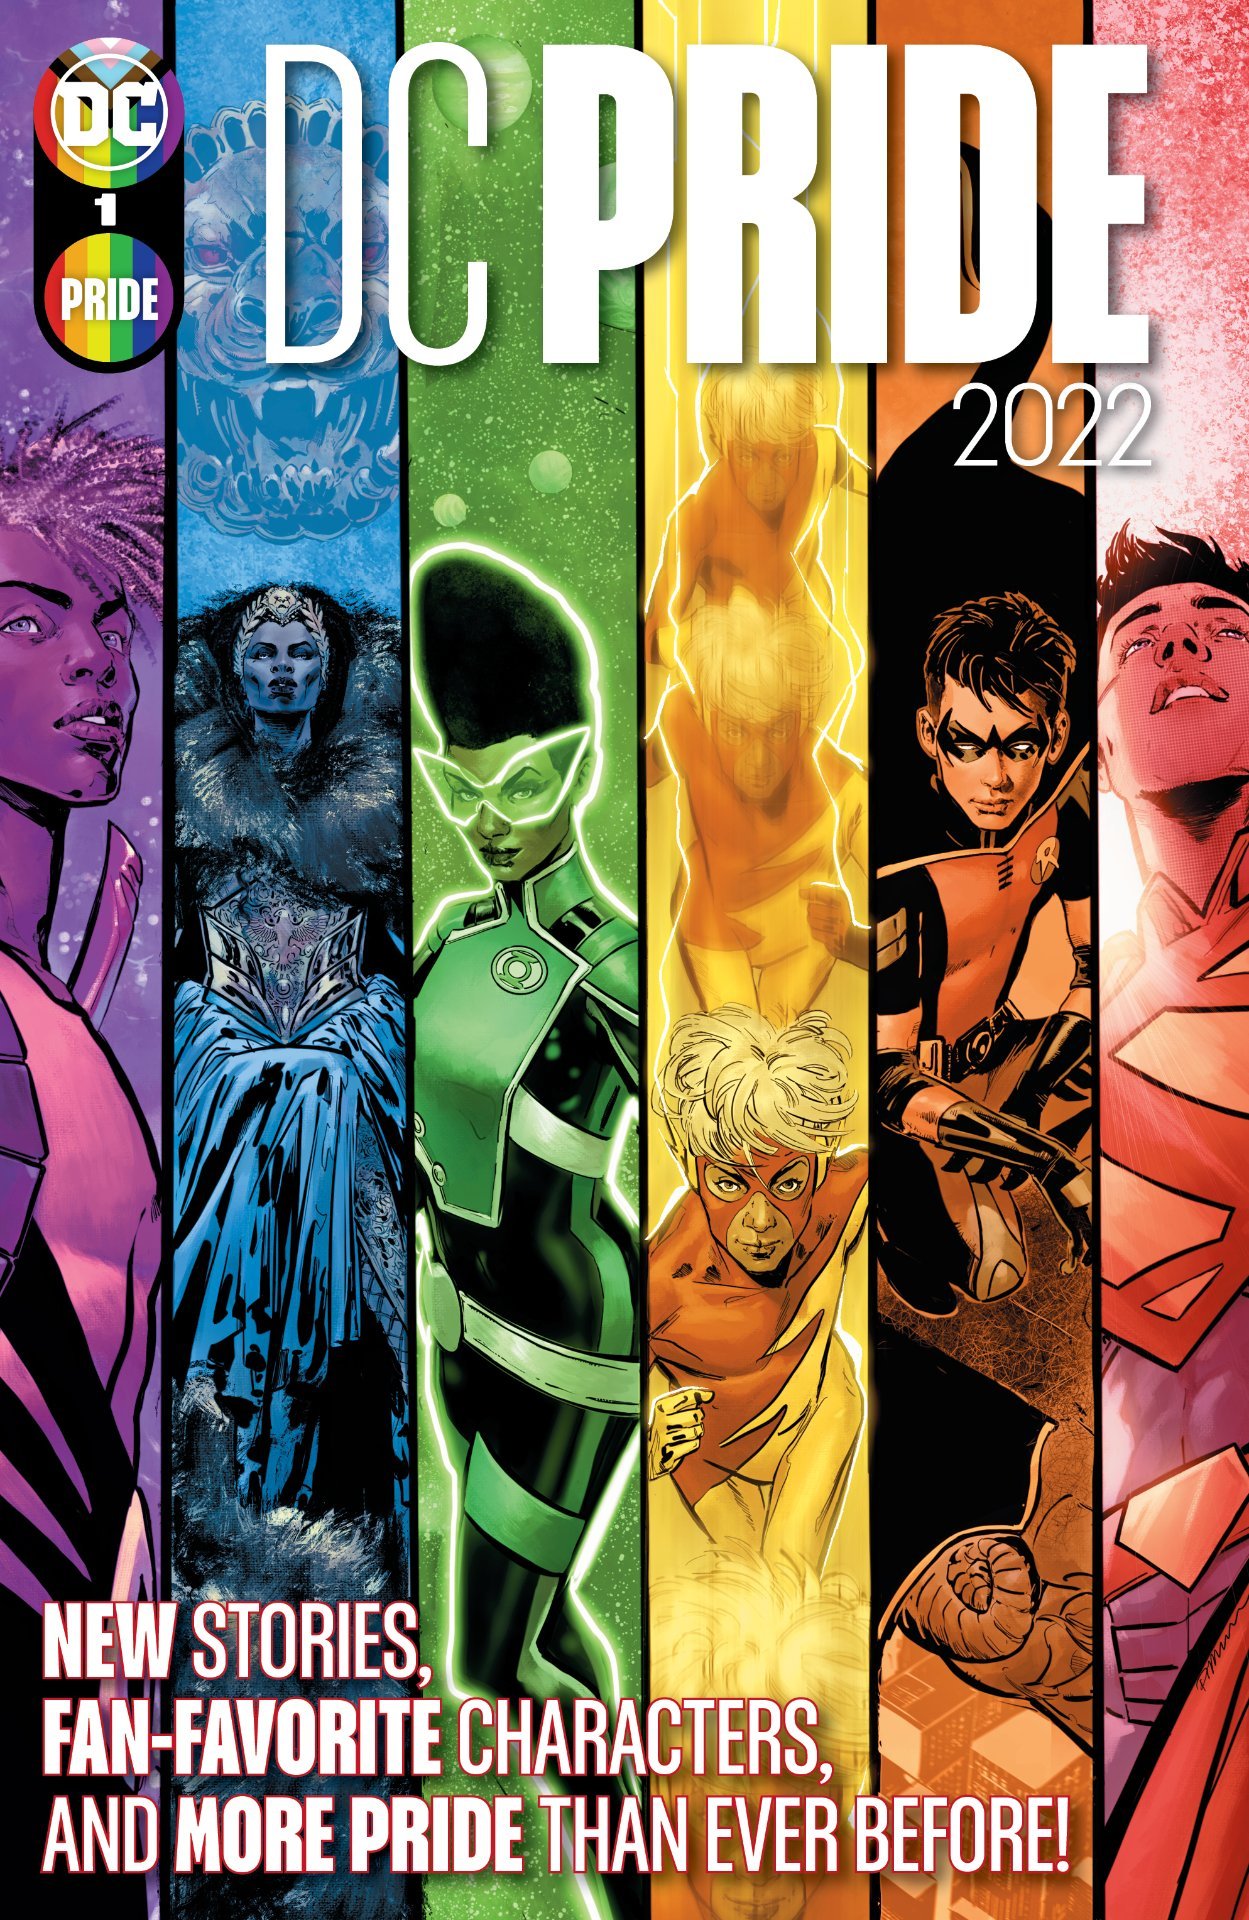 Cover di DC Pride 2022 di Phil Jimenez, che apre le celebrazioni di Giugno della DC Comics